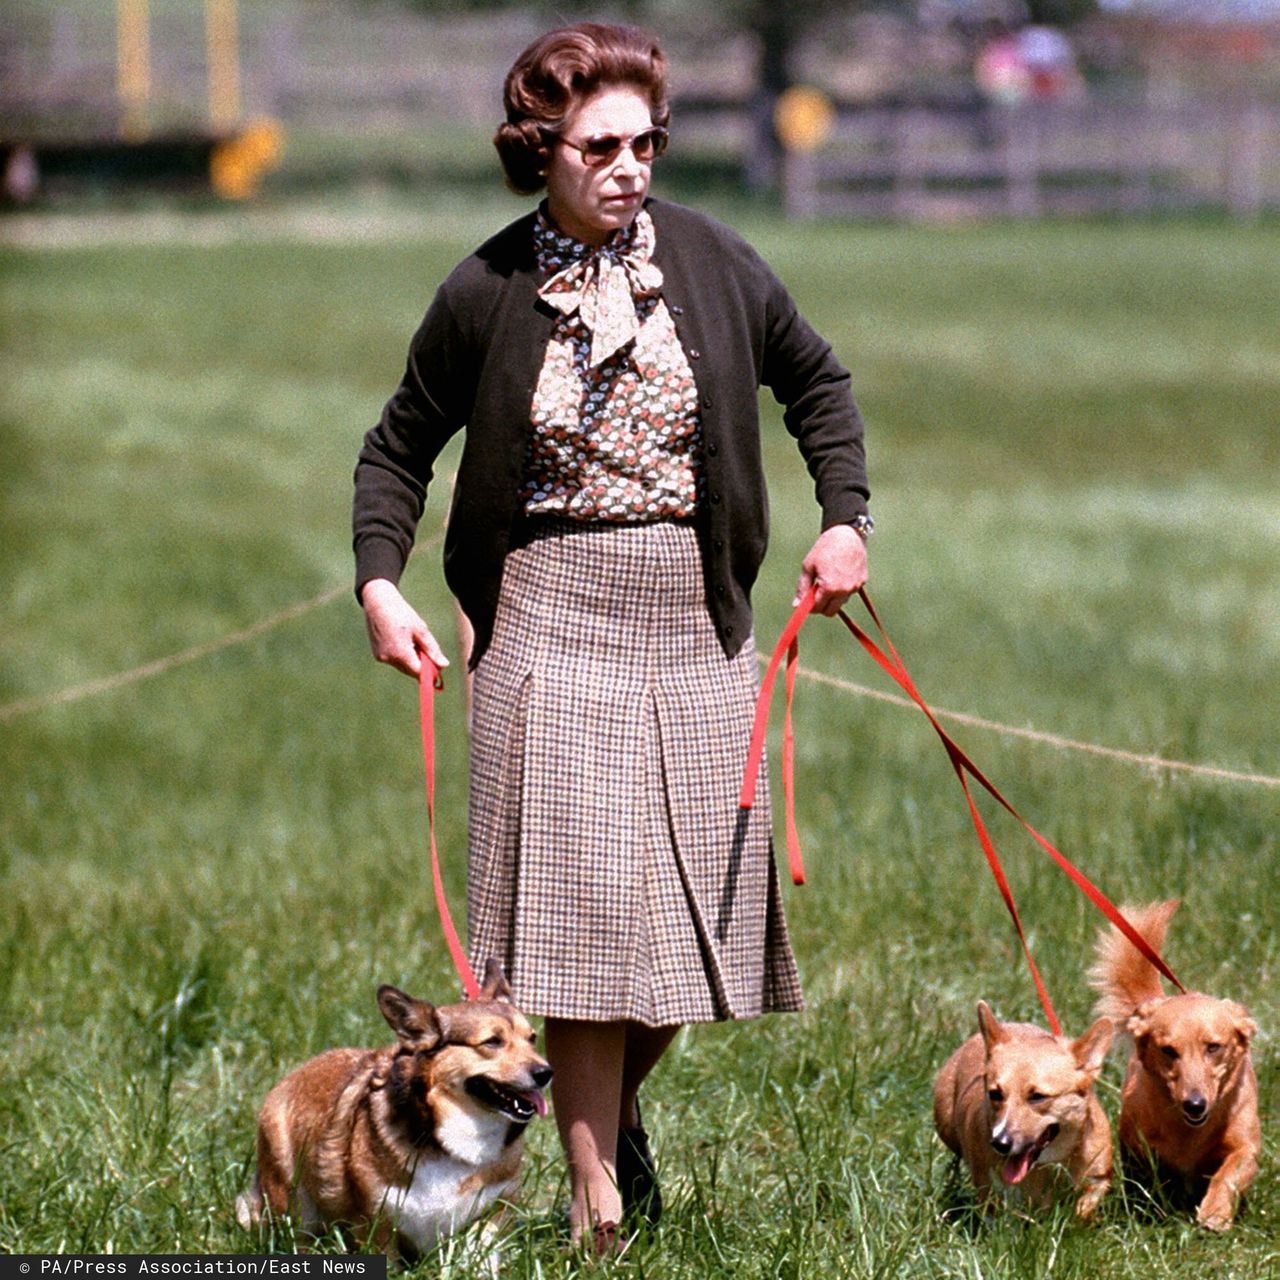 Królowa ELżbieta II i jej ukochane psy w 1980 r. (East News)
PA